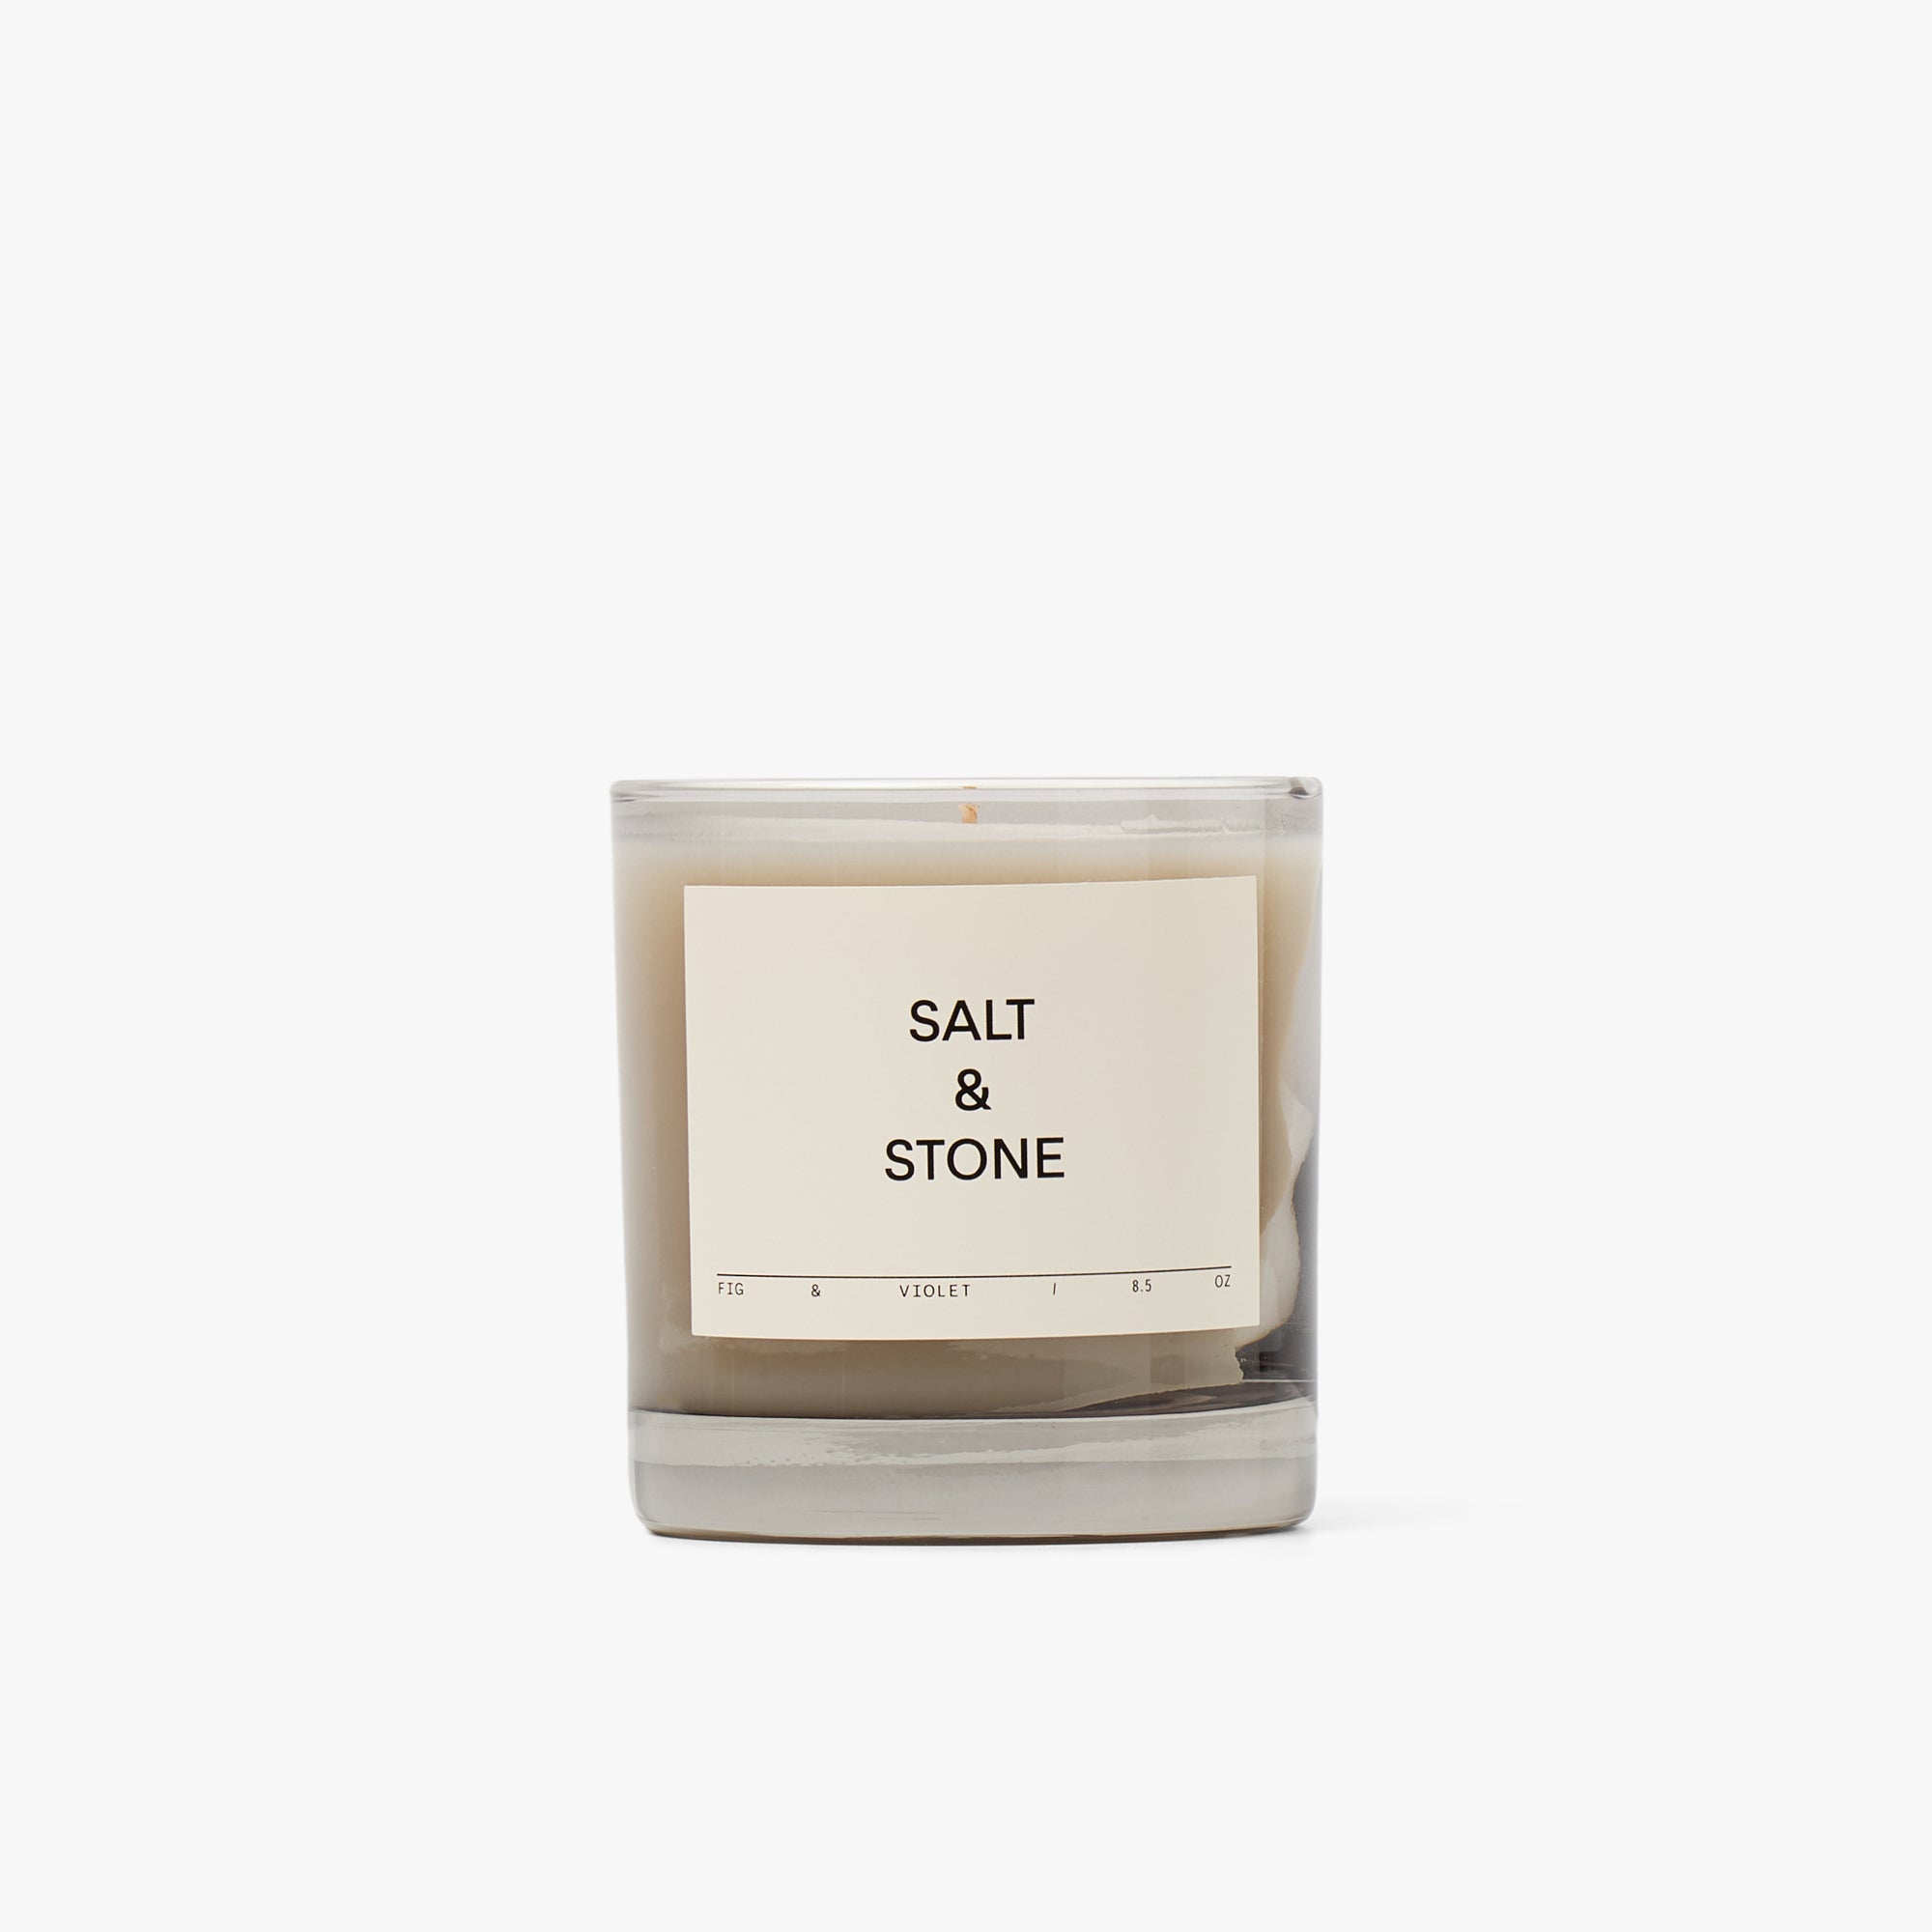 SALT & STONE Candle / Fig & Violet 1